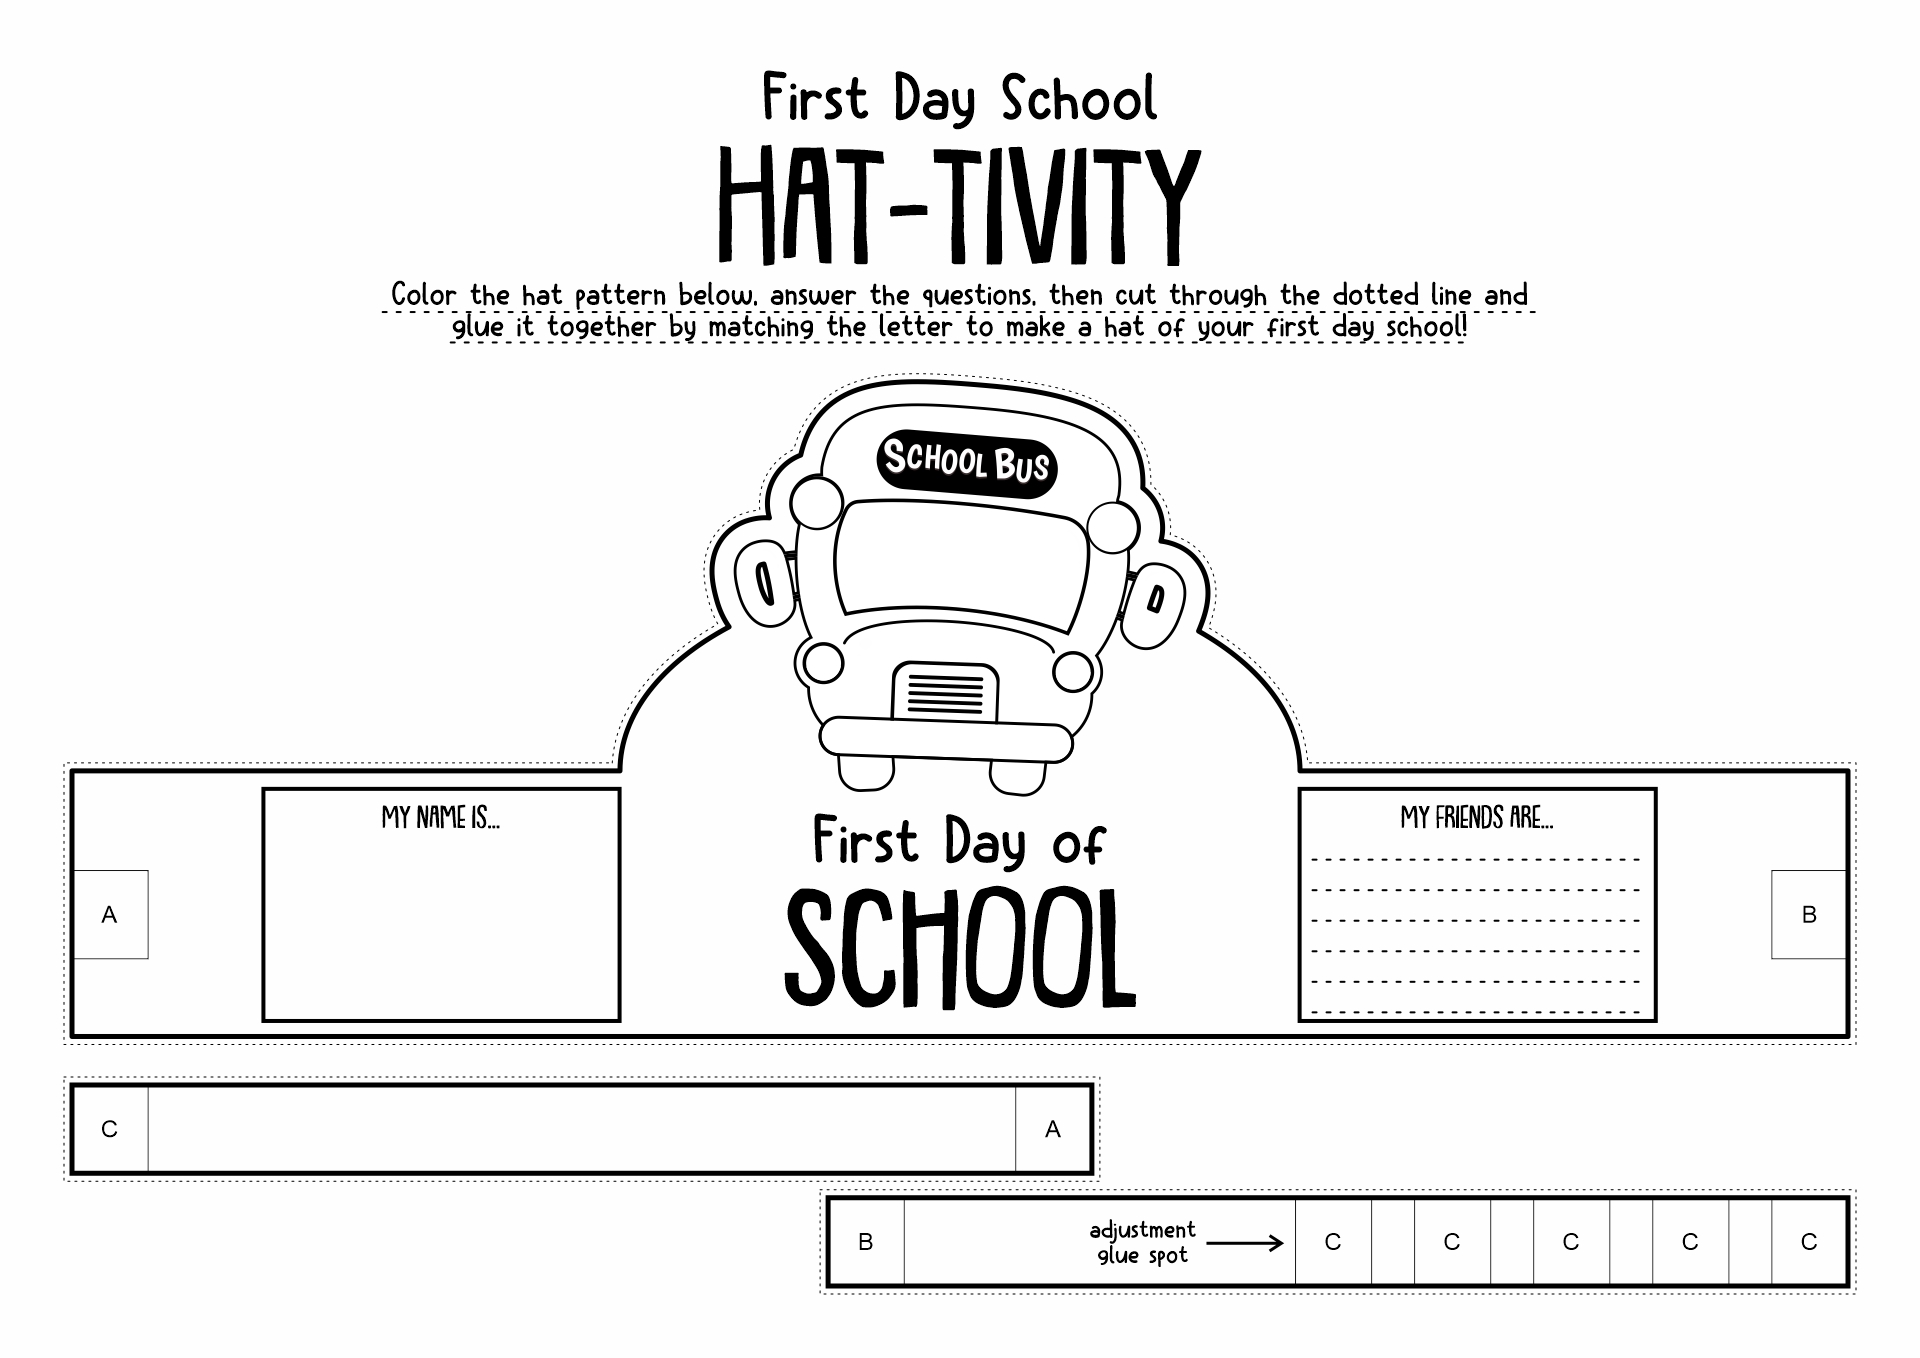 First Day of School Activity Kindergarten Image